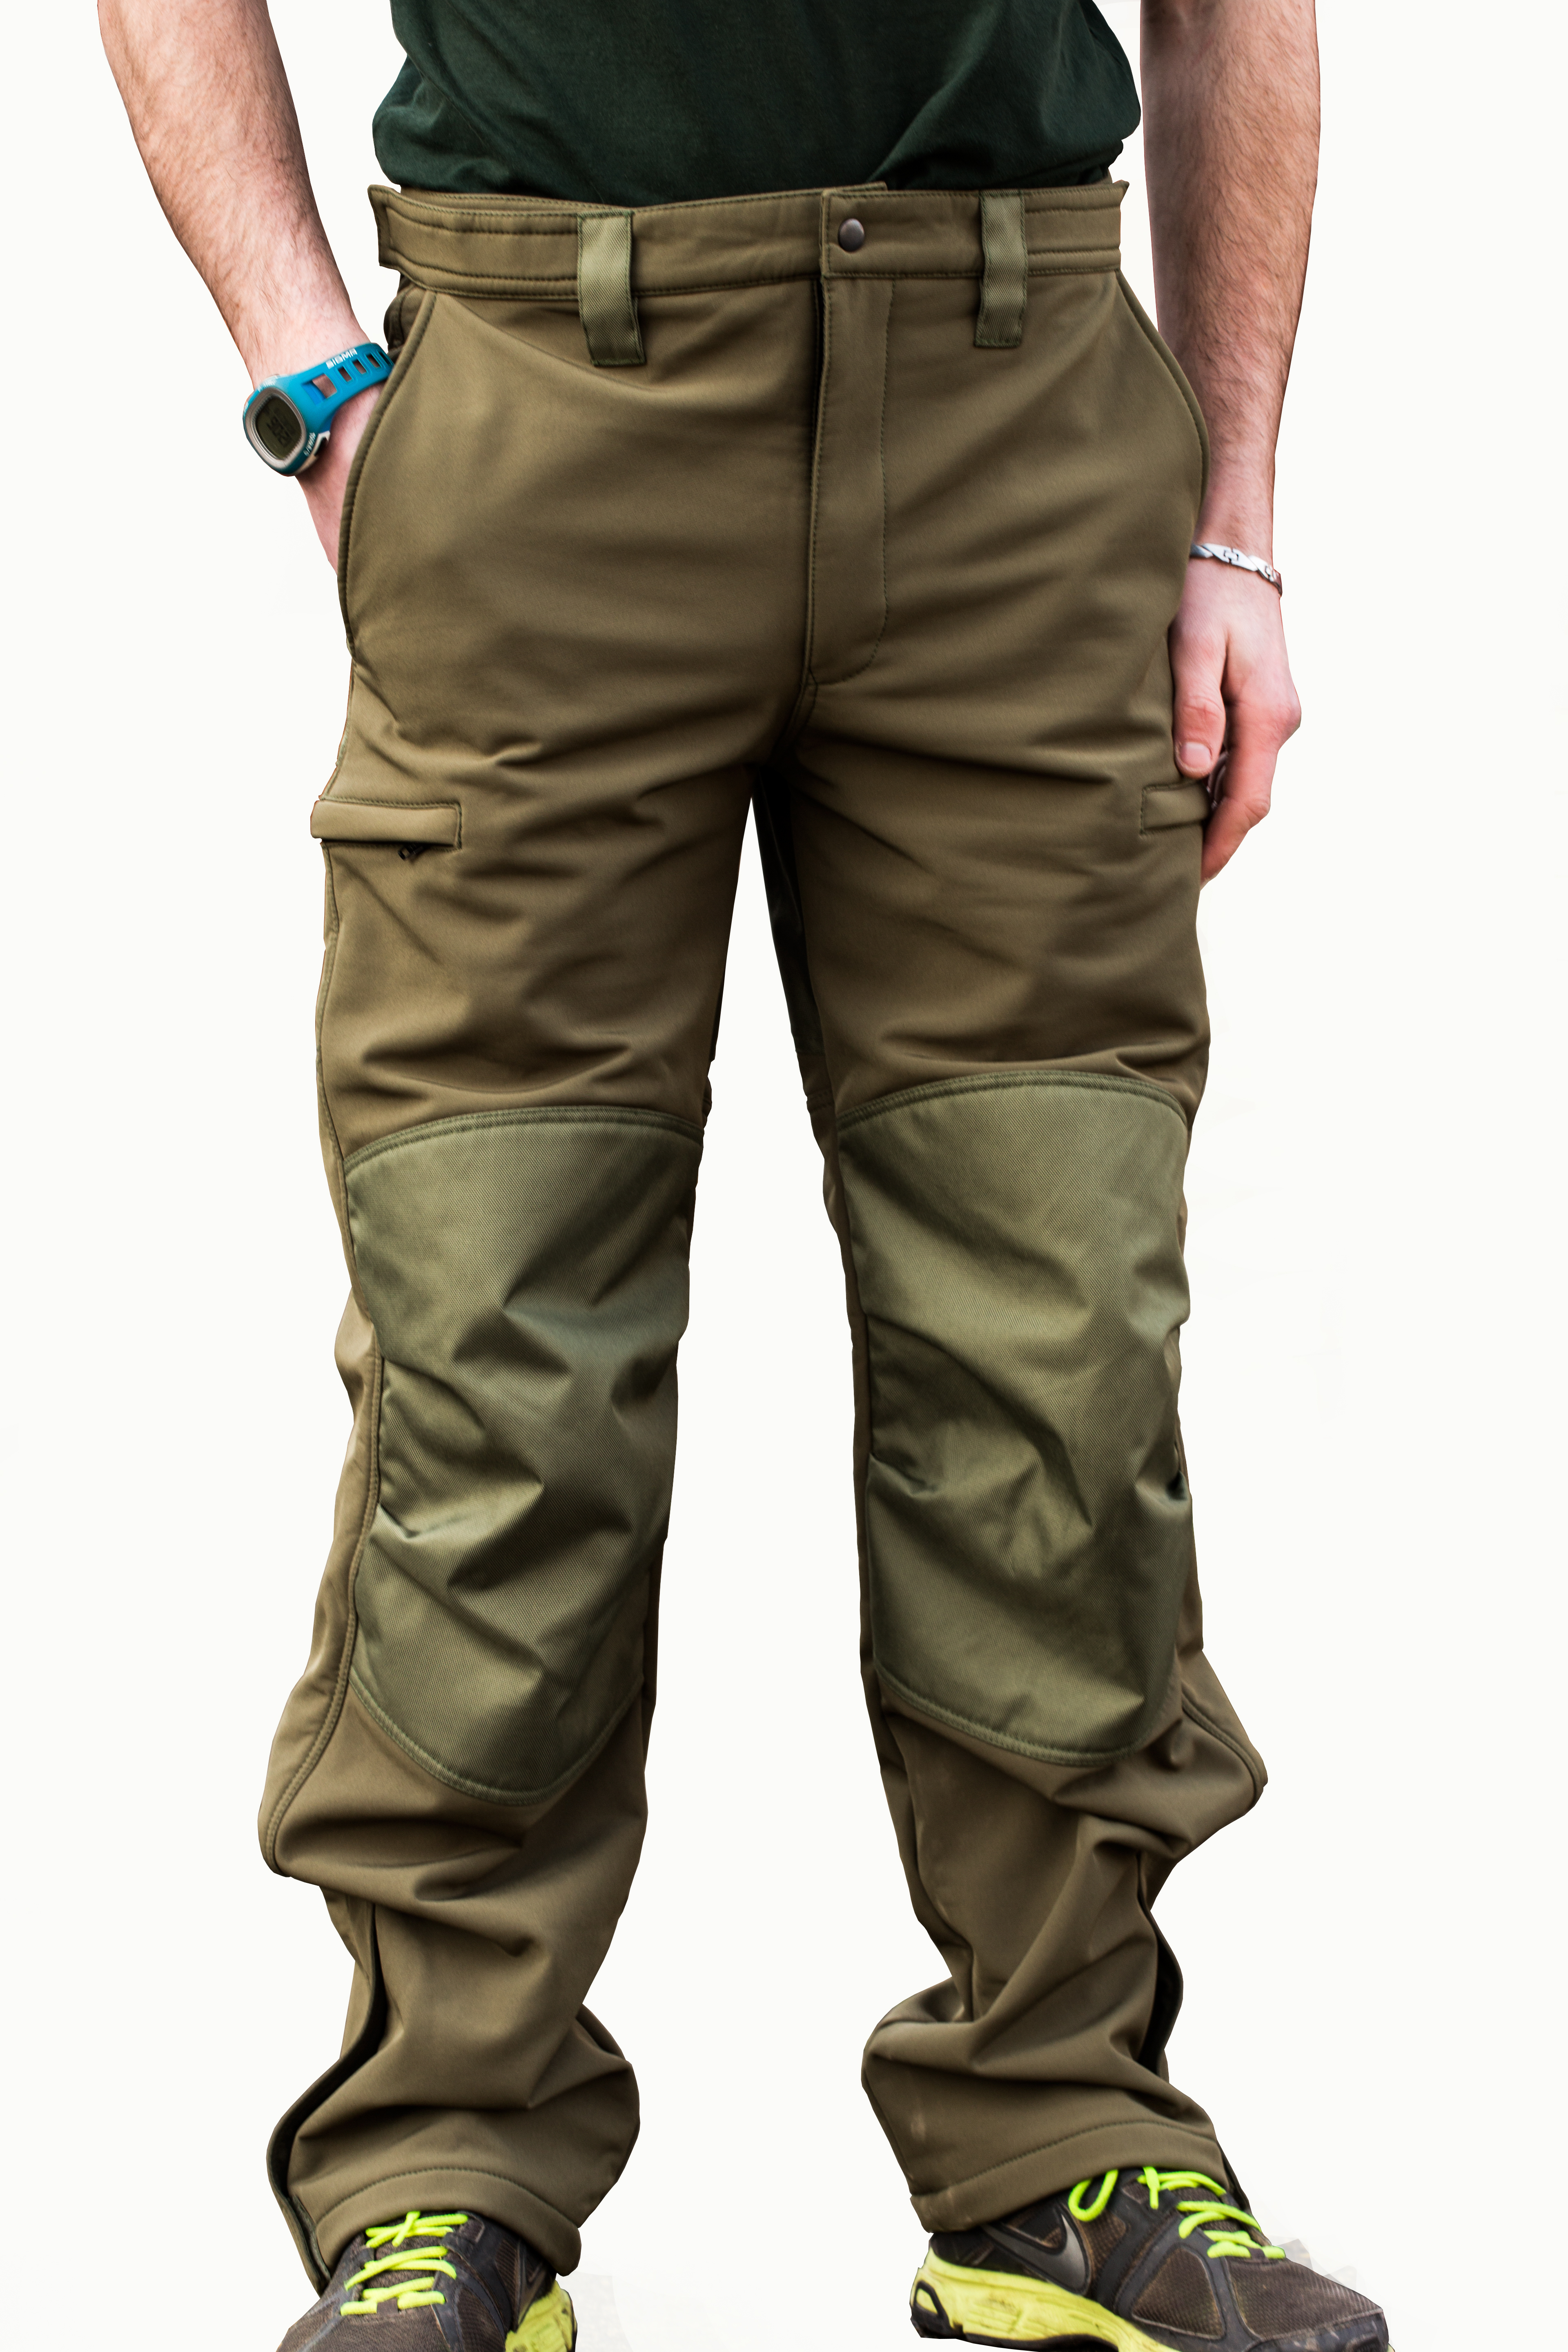 Mikbaits oblečení - Nepromokavé funkční kalhoty Mikbaits STR zelené XL